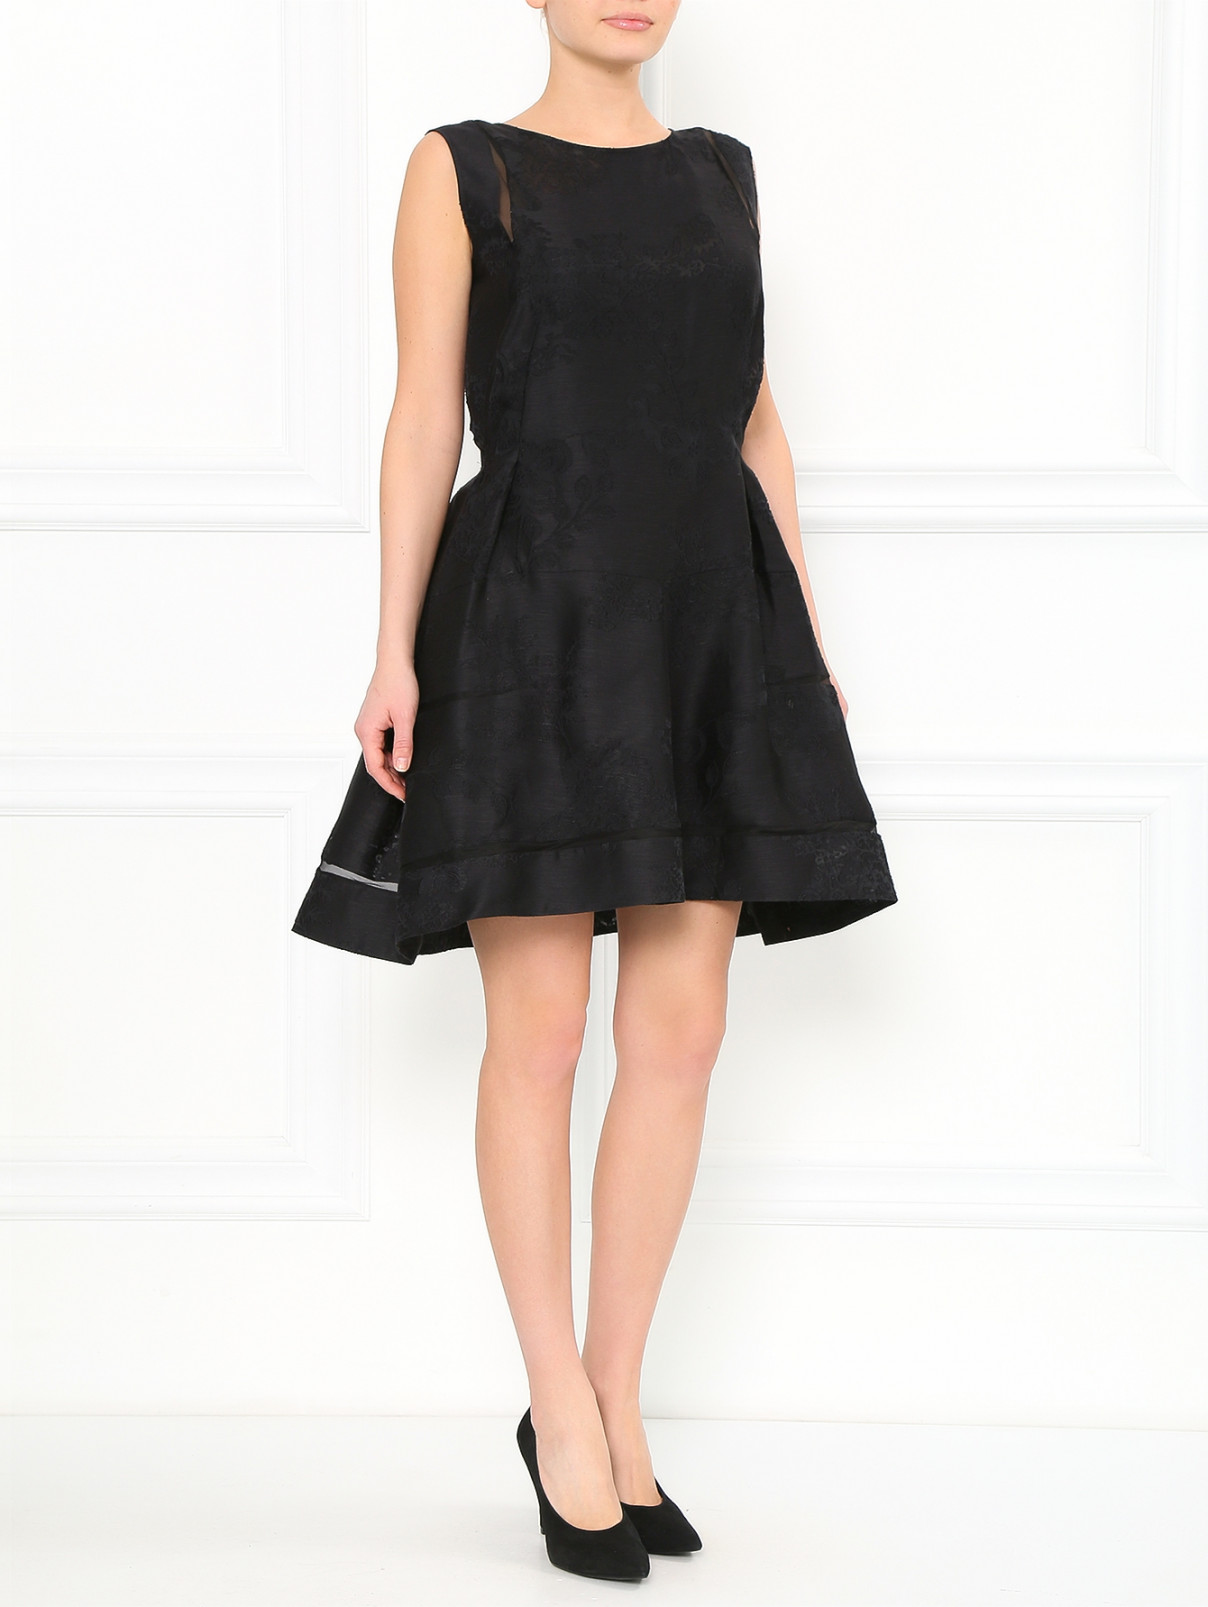 Кружевное платье из шелка и льна Ermanno Scervino  –  Модель Общий вид  – Цвет:  Черный